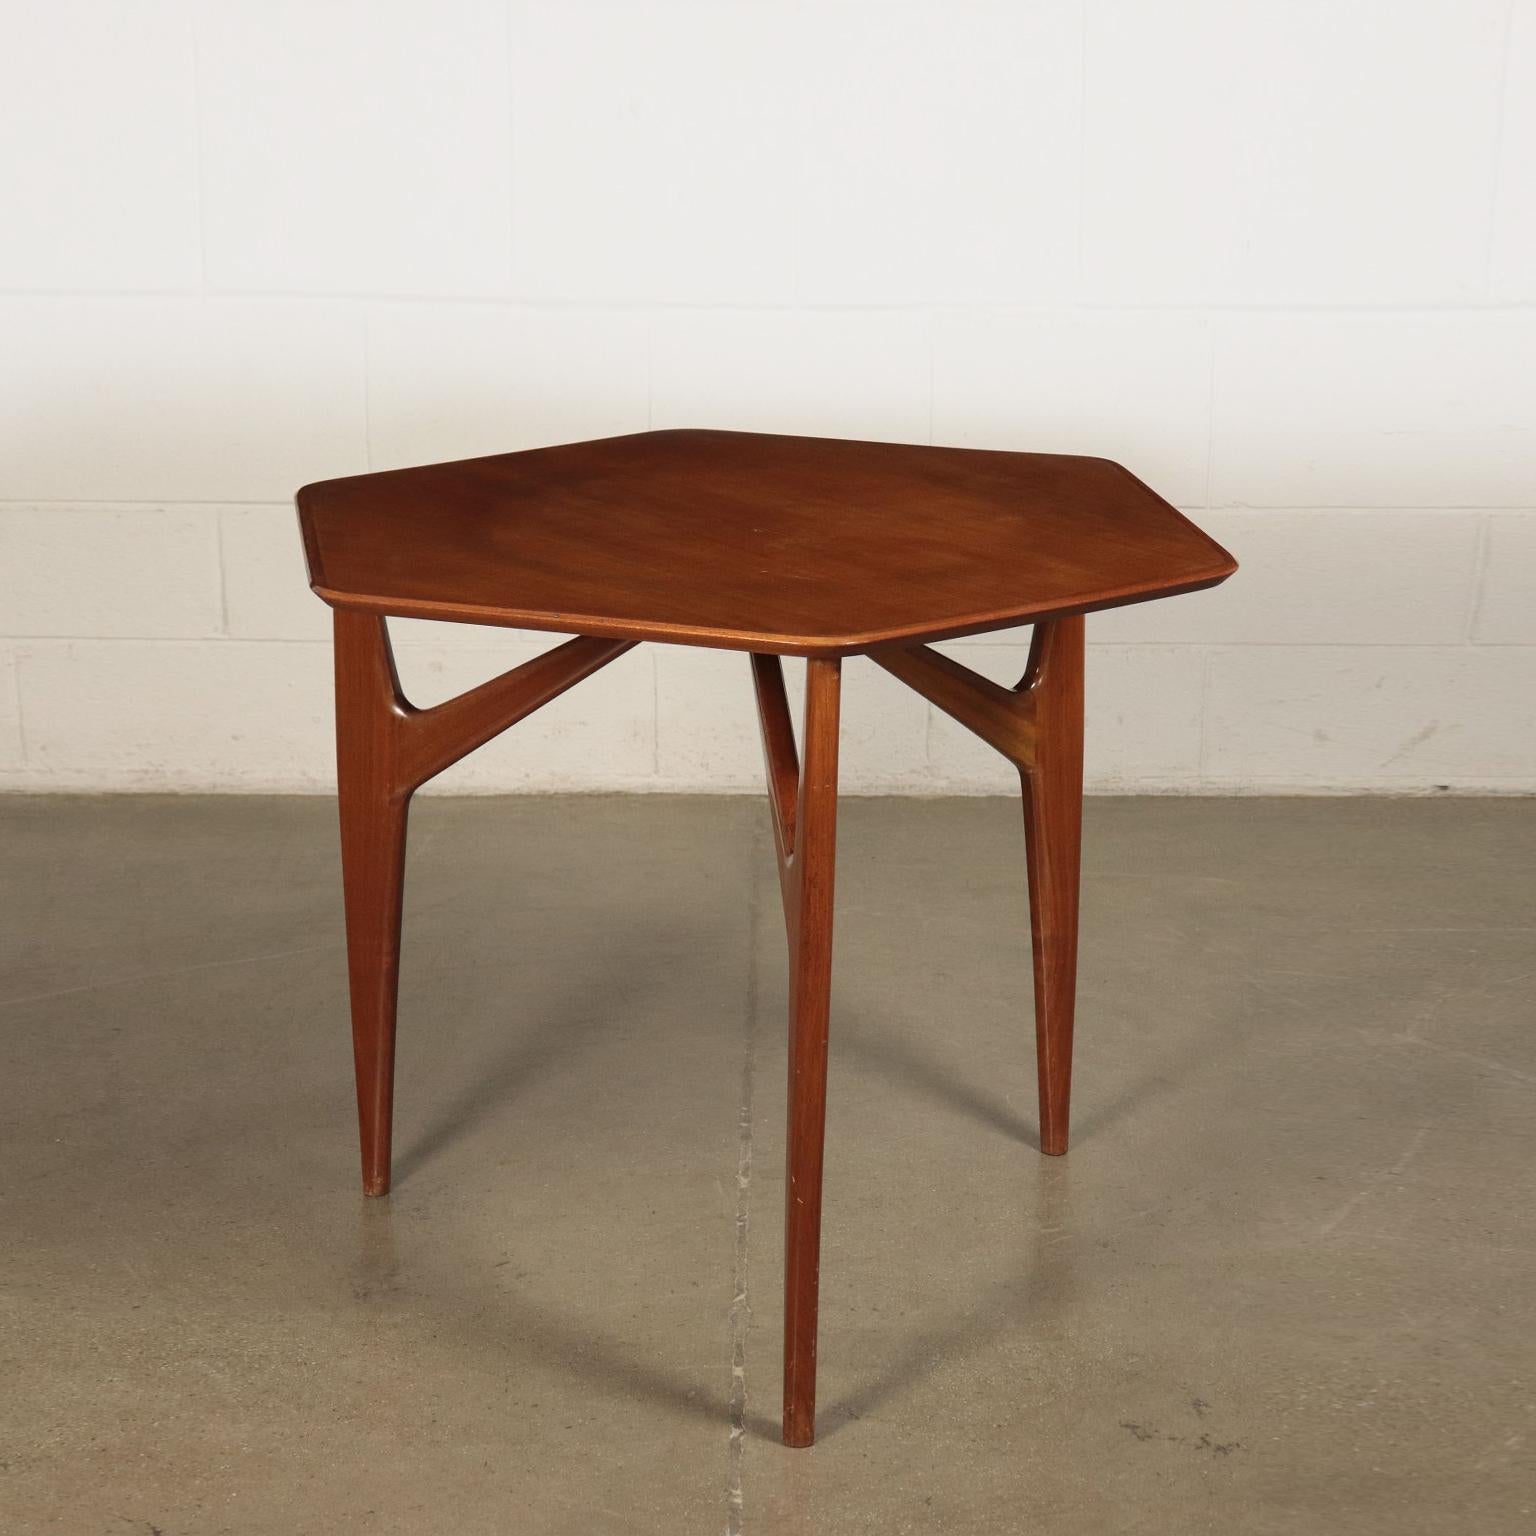 Table Mahogany Veneer and Solid Wood 1950s Italian Prodution 6